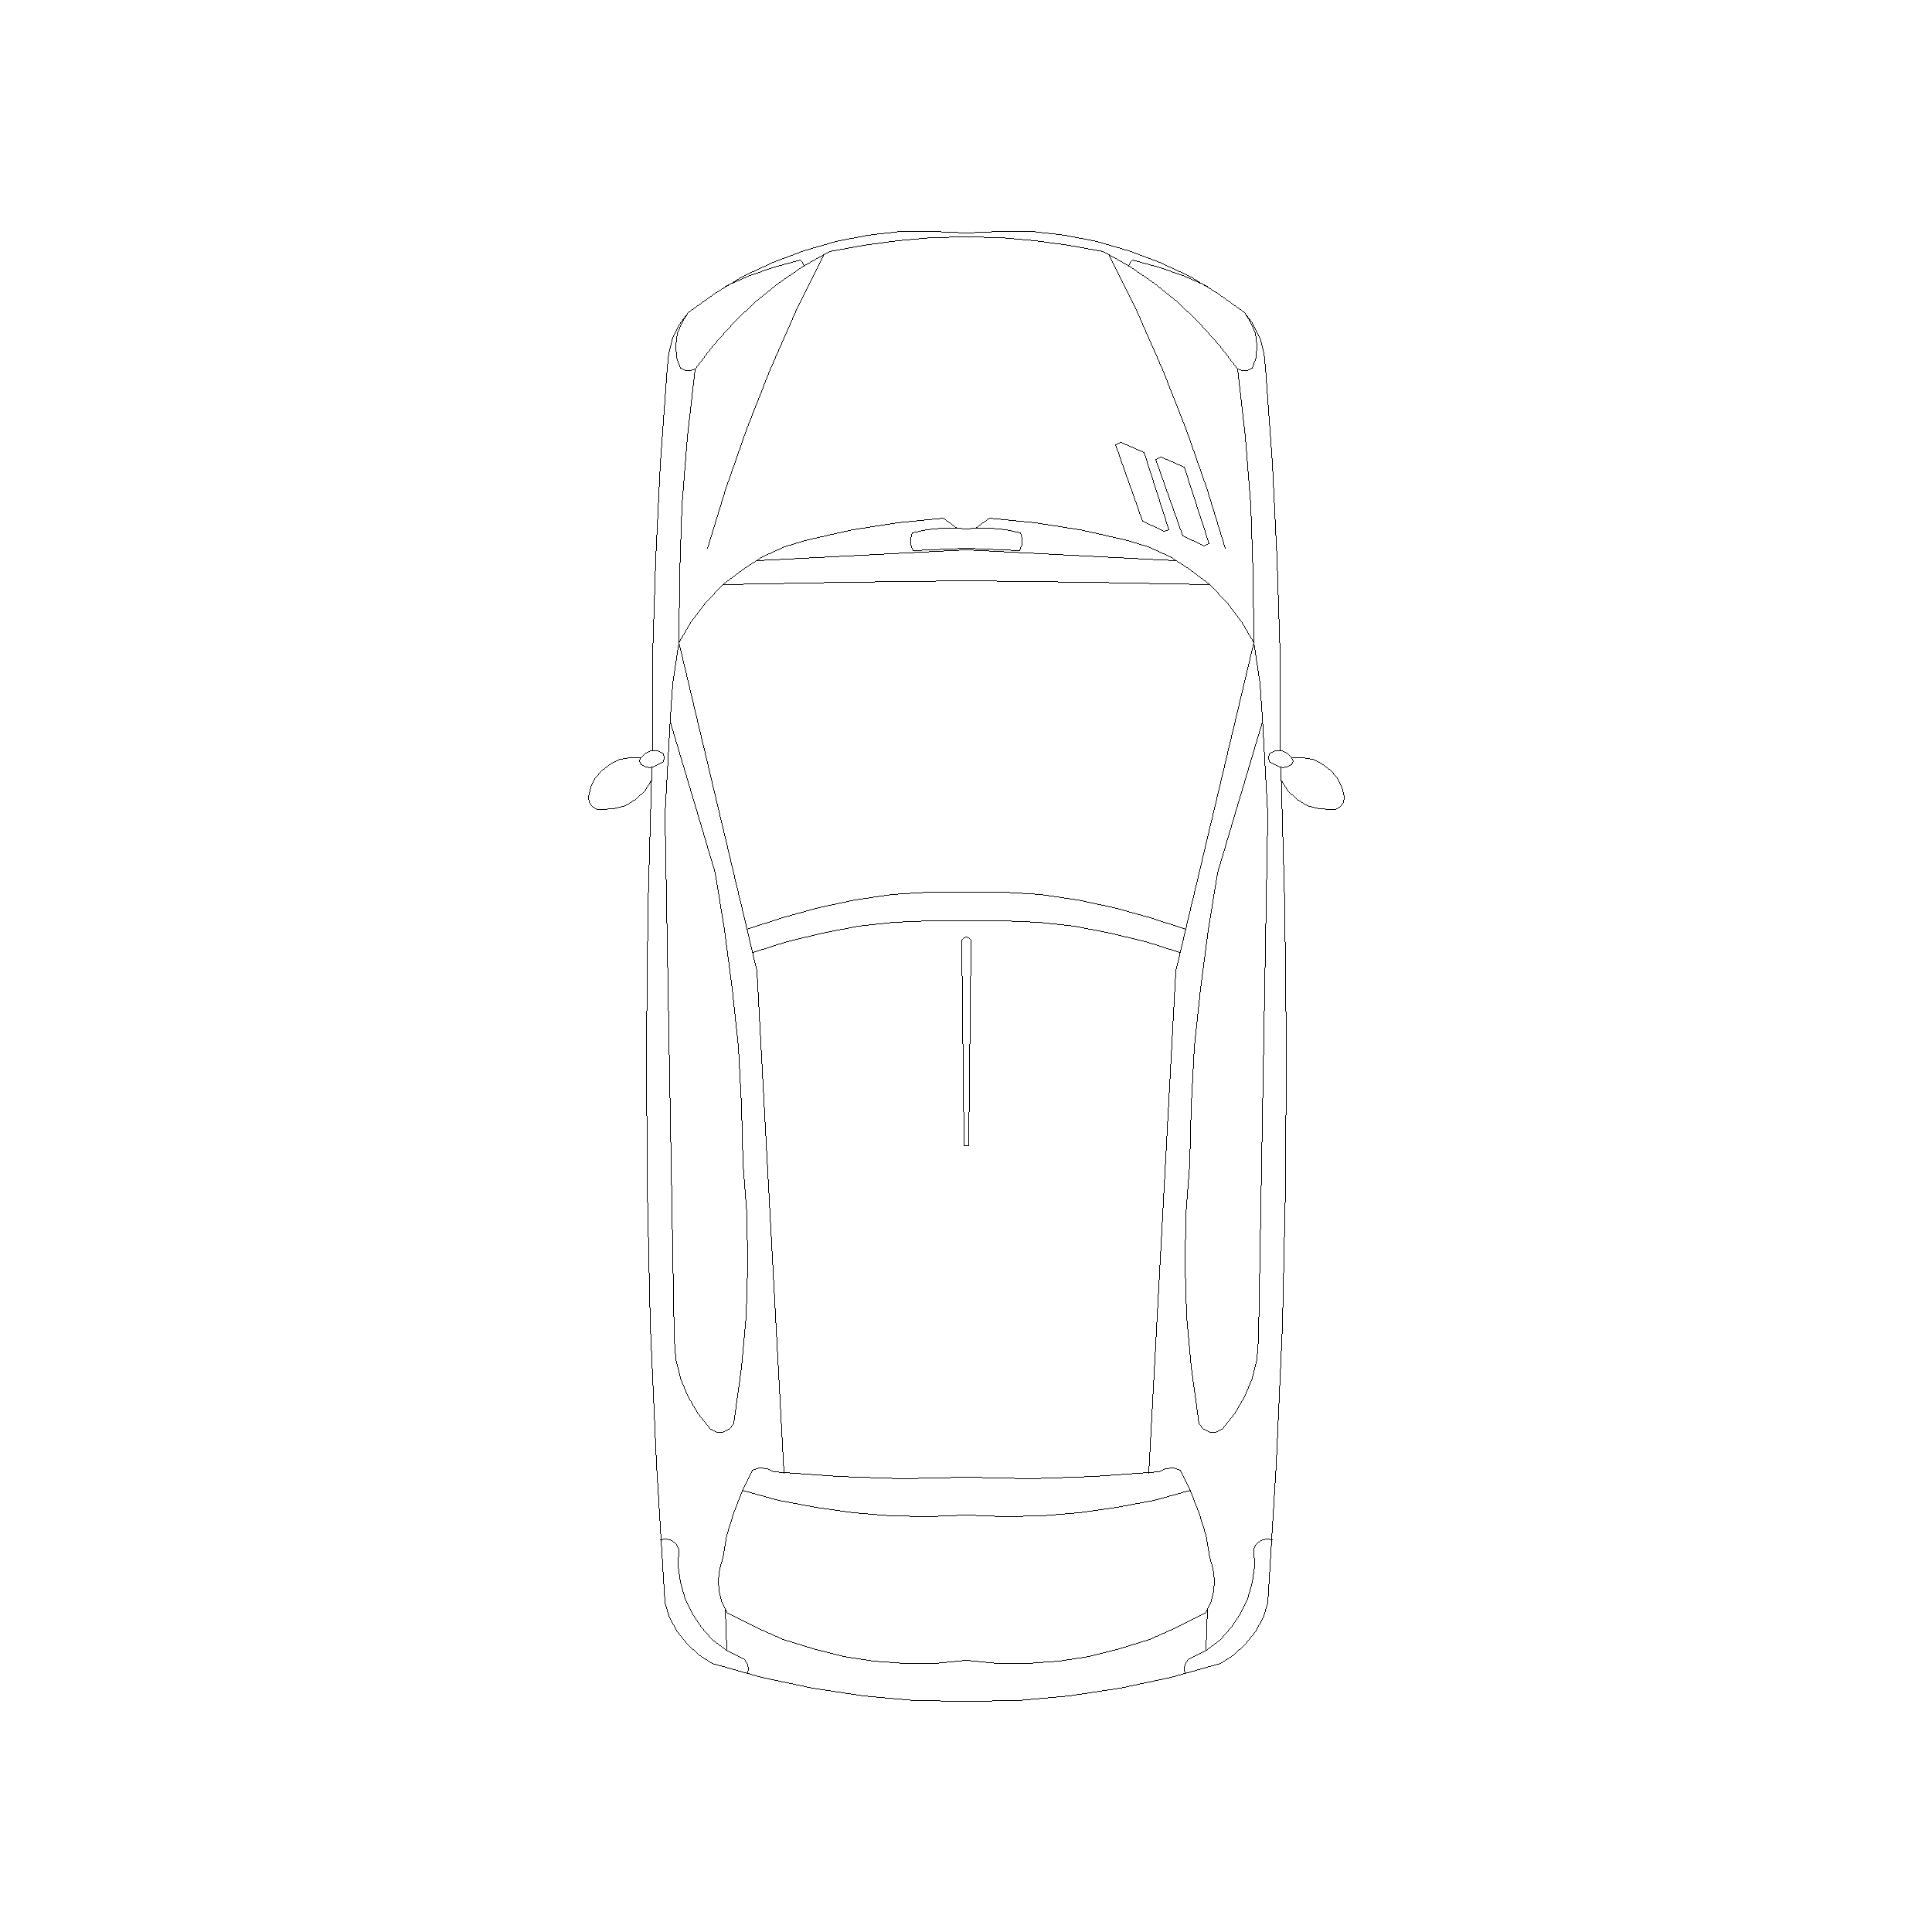 Honda Car Type 8: Top View Plan - Cadblockdwg